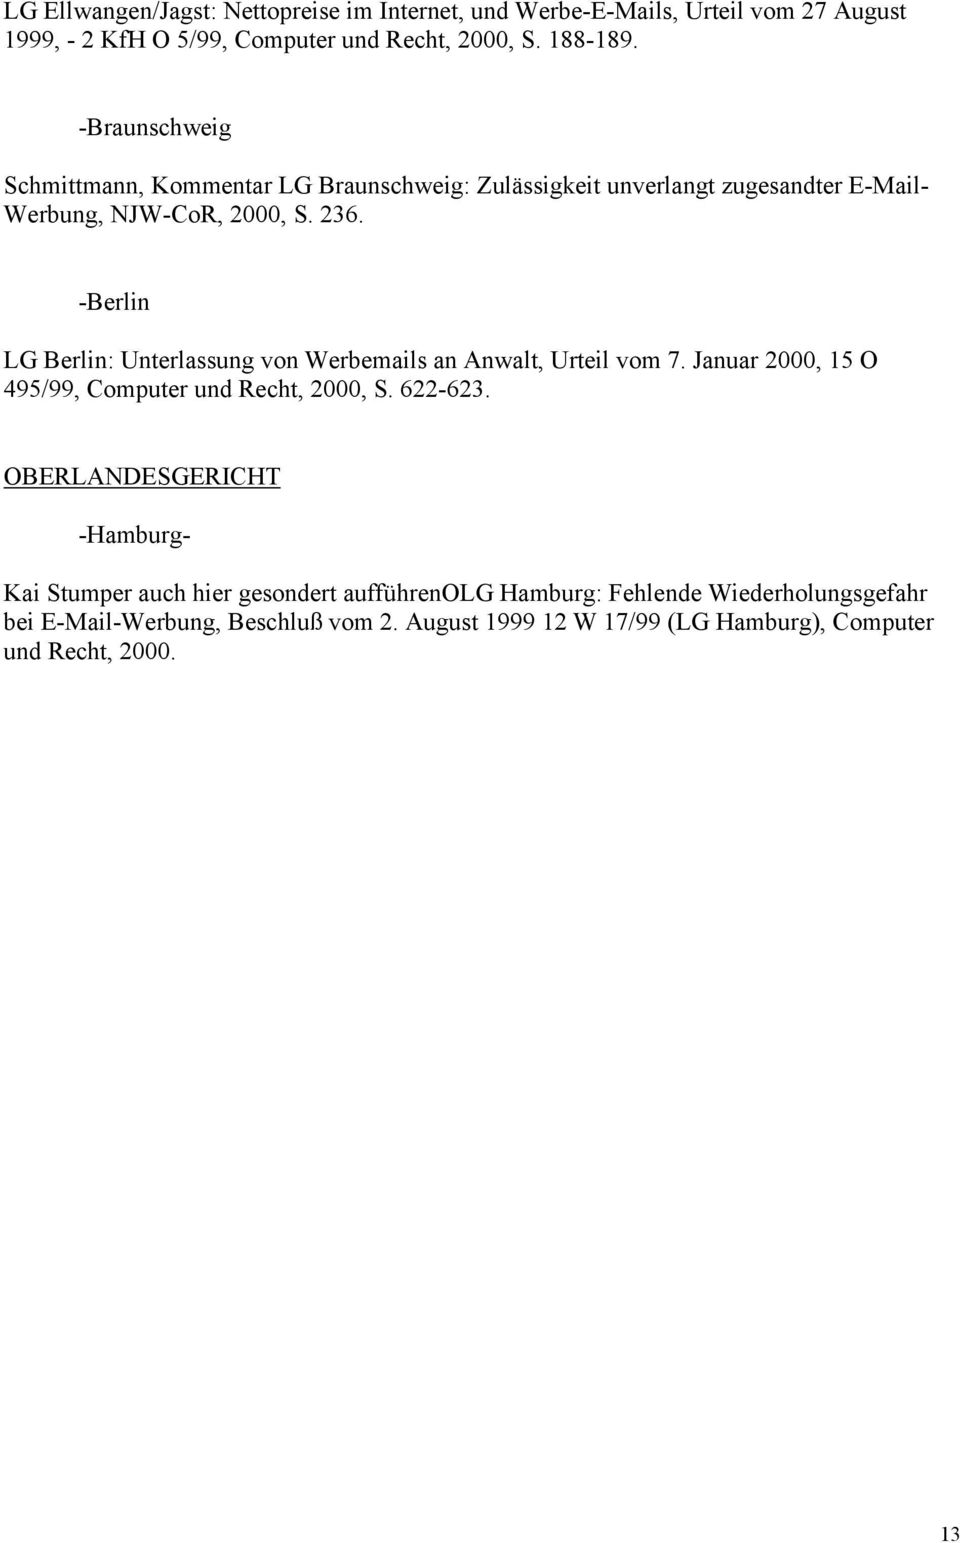 -Berlin LG Berlin: Unterlassung von Werbemails an Anwalt, Urteil vom 7. Januar 2000, 15 O 495/99, Computer und Recht, 2000, S. 622-623.